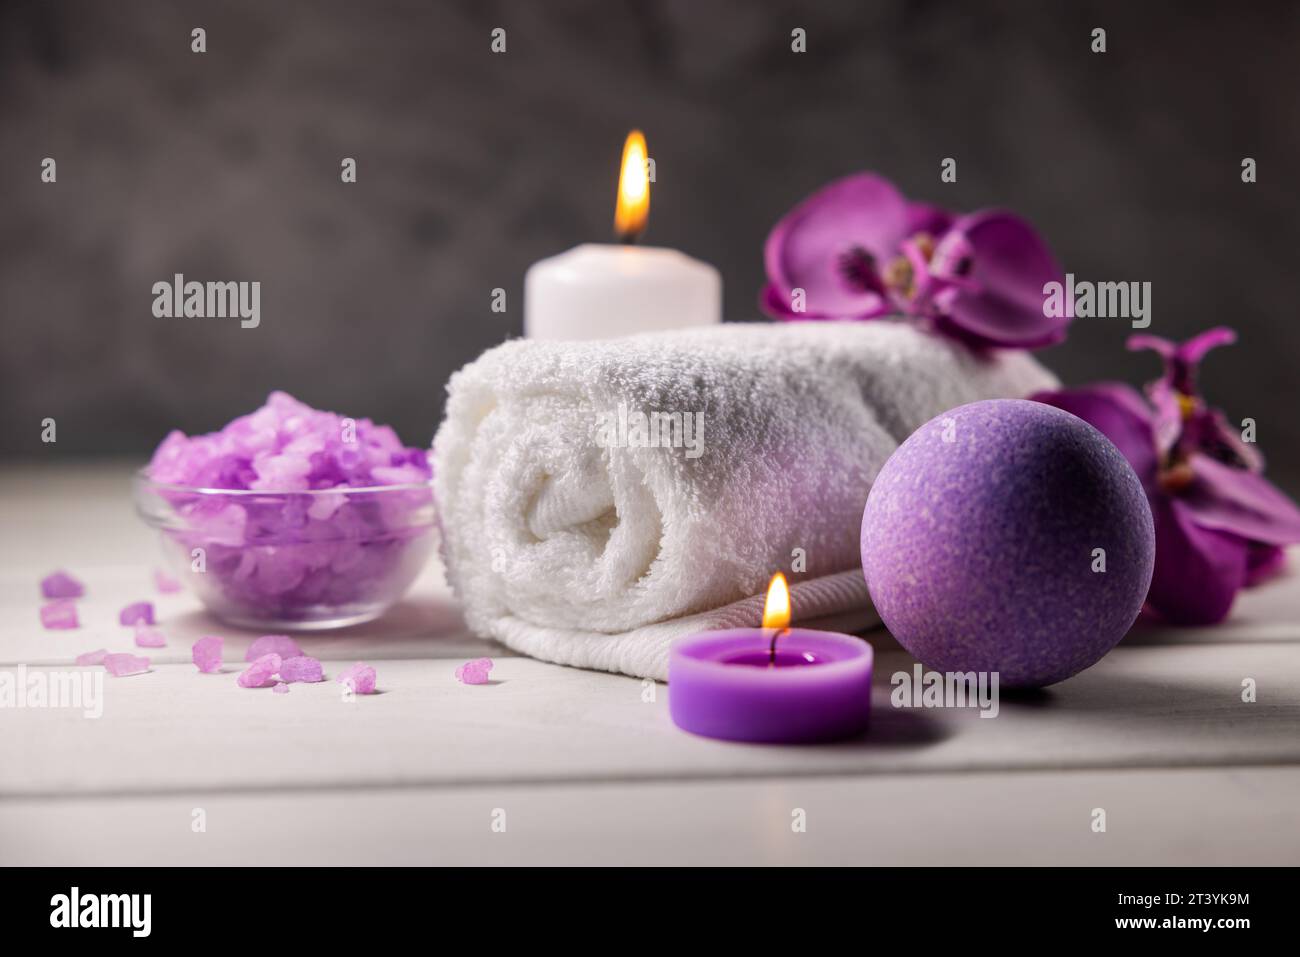 bombe de bain violette, cristaux de sel de mer, serviette et bougies parfumées sur la table en bois. soins de la peau du corps. spa bien-être Banque D'Images